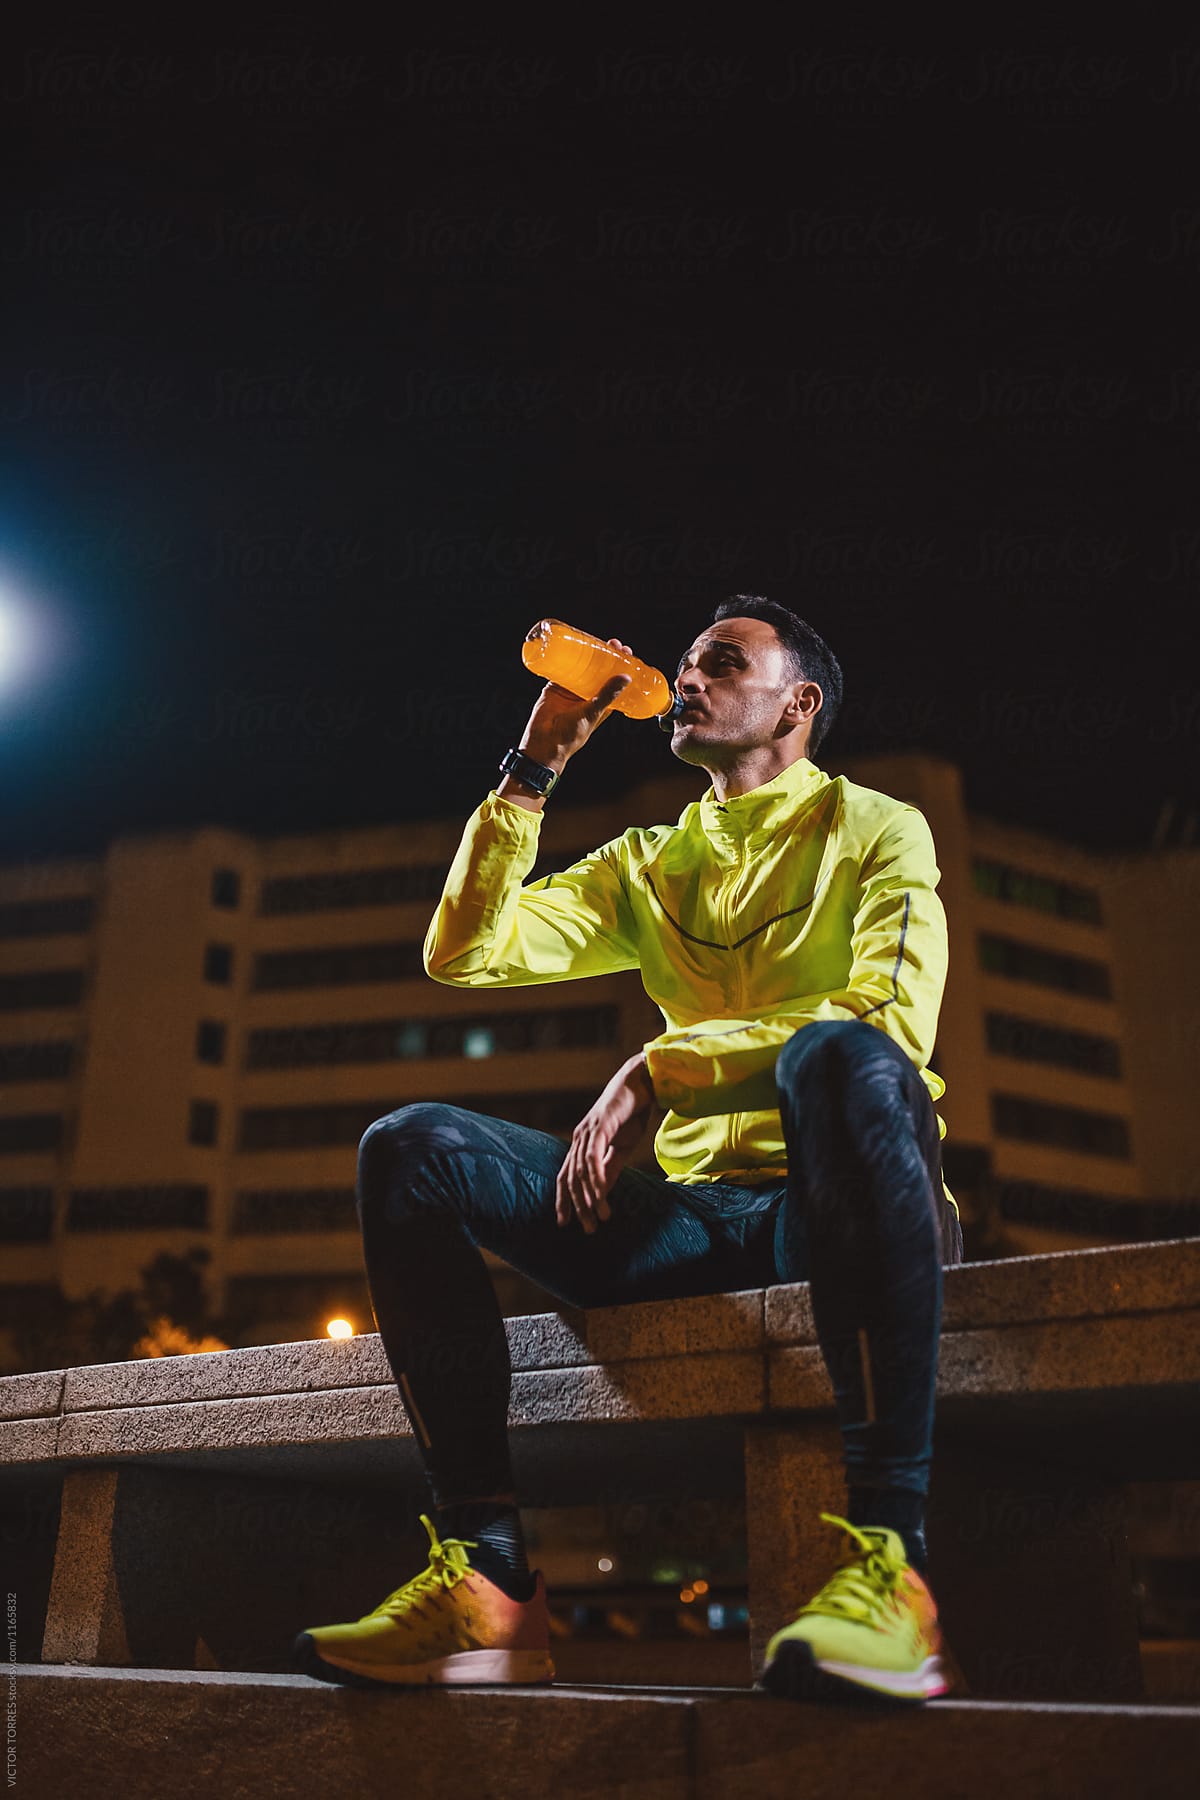 Sportsman drinking orange drink from bottle